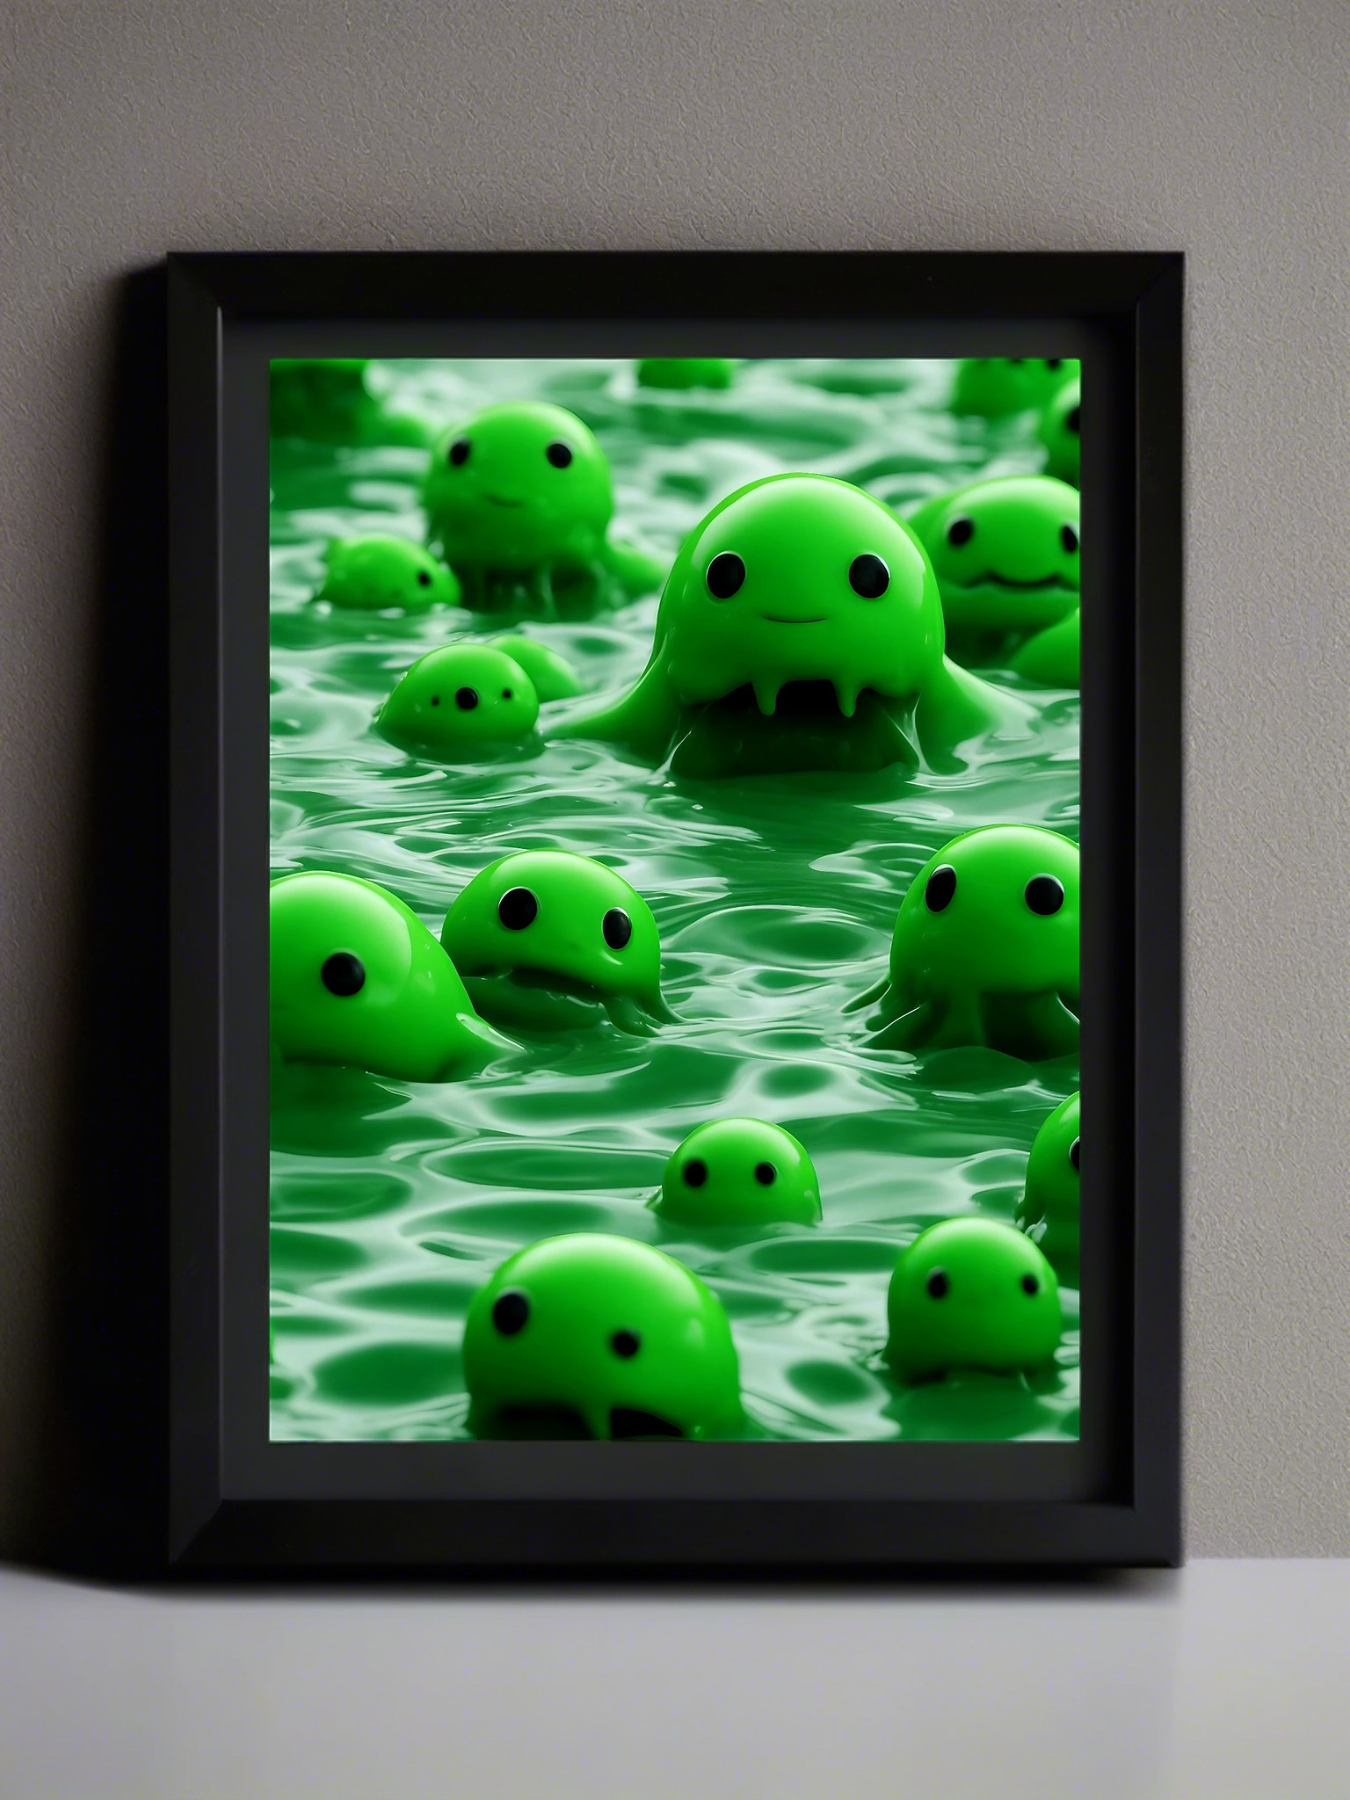 Noch mehr süße grüne Schleimmonster im See - Fantasy Mini Foto-Poster - 27x20 cm 3